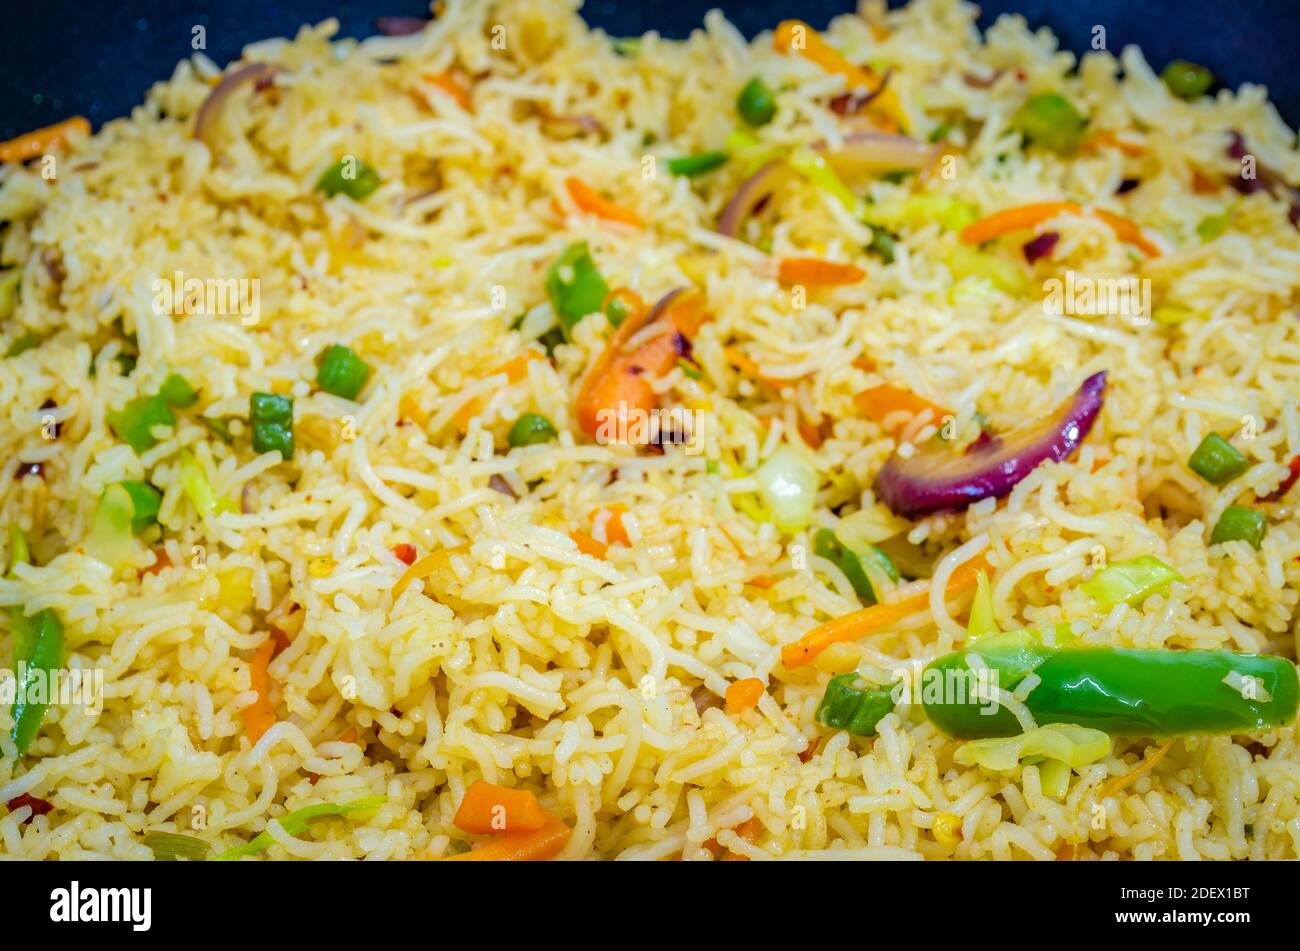 Primer plano de coloridos fideos idiyappam o fideos de arroz indio en una sartén Foto de stock